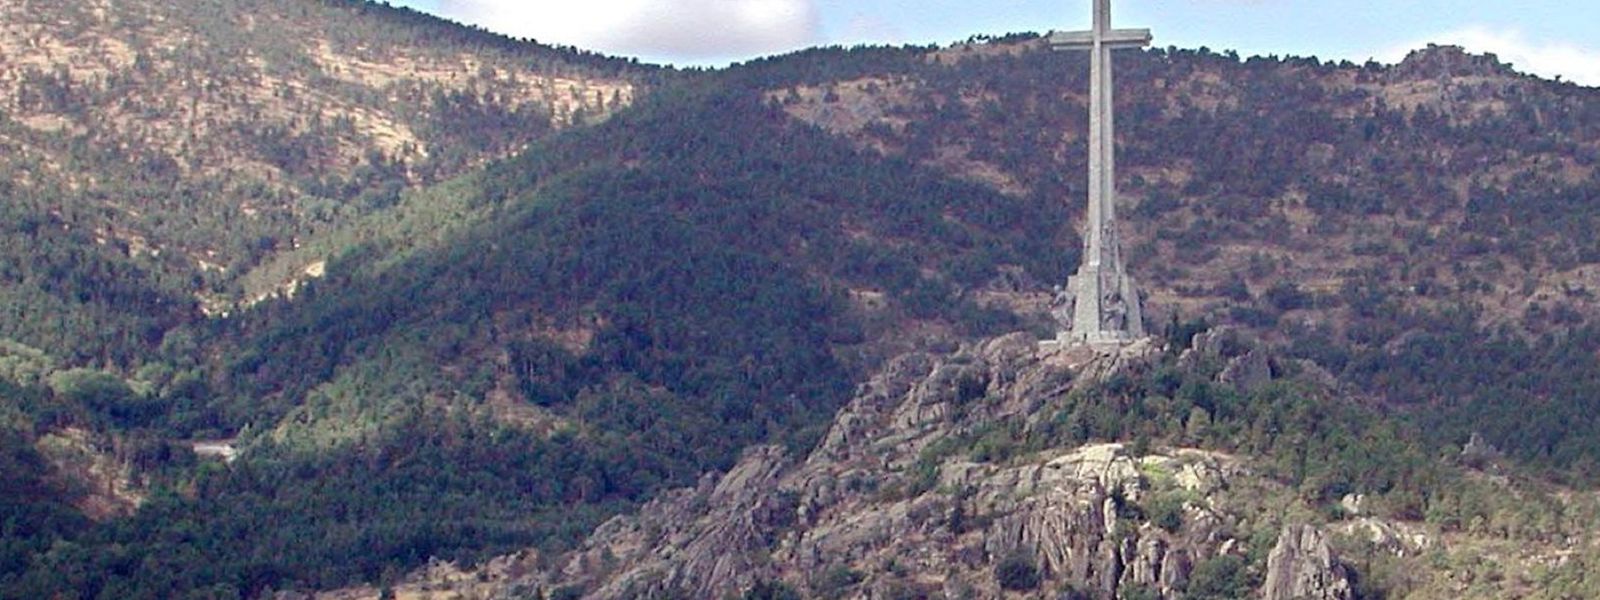 Blick auf das Valle de los Caidos (Tal der Gefallenen) nahe Madrid, der Gedenkstätte zu Ehren der Gefallenen der faschistischen Truppen Francos im Spanischen Bürgerkrieg. 